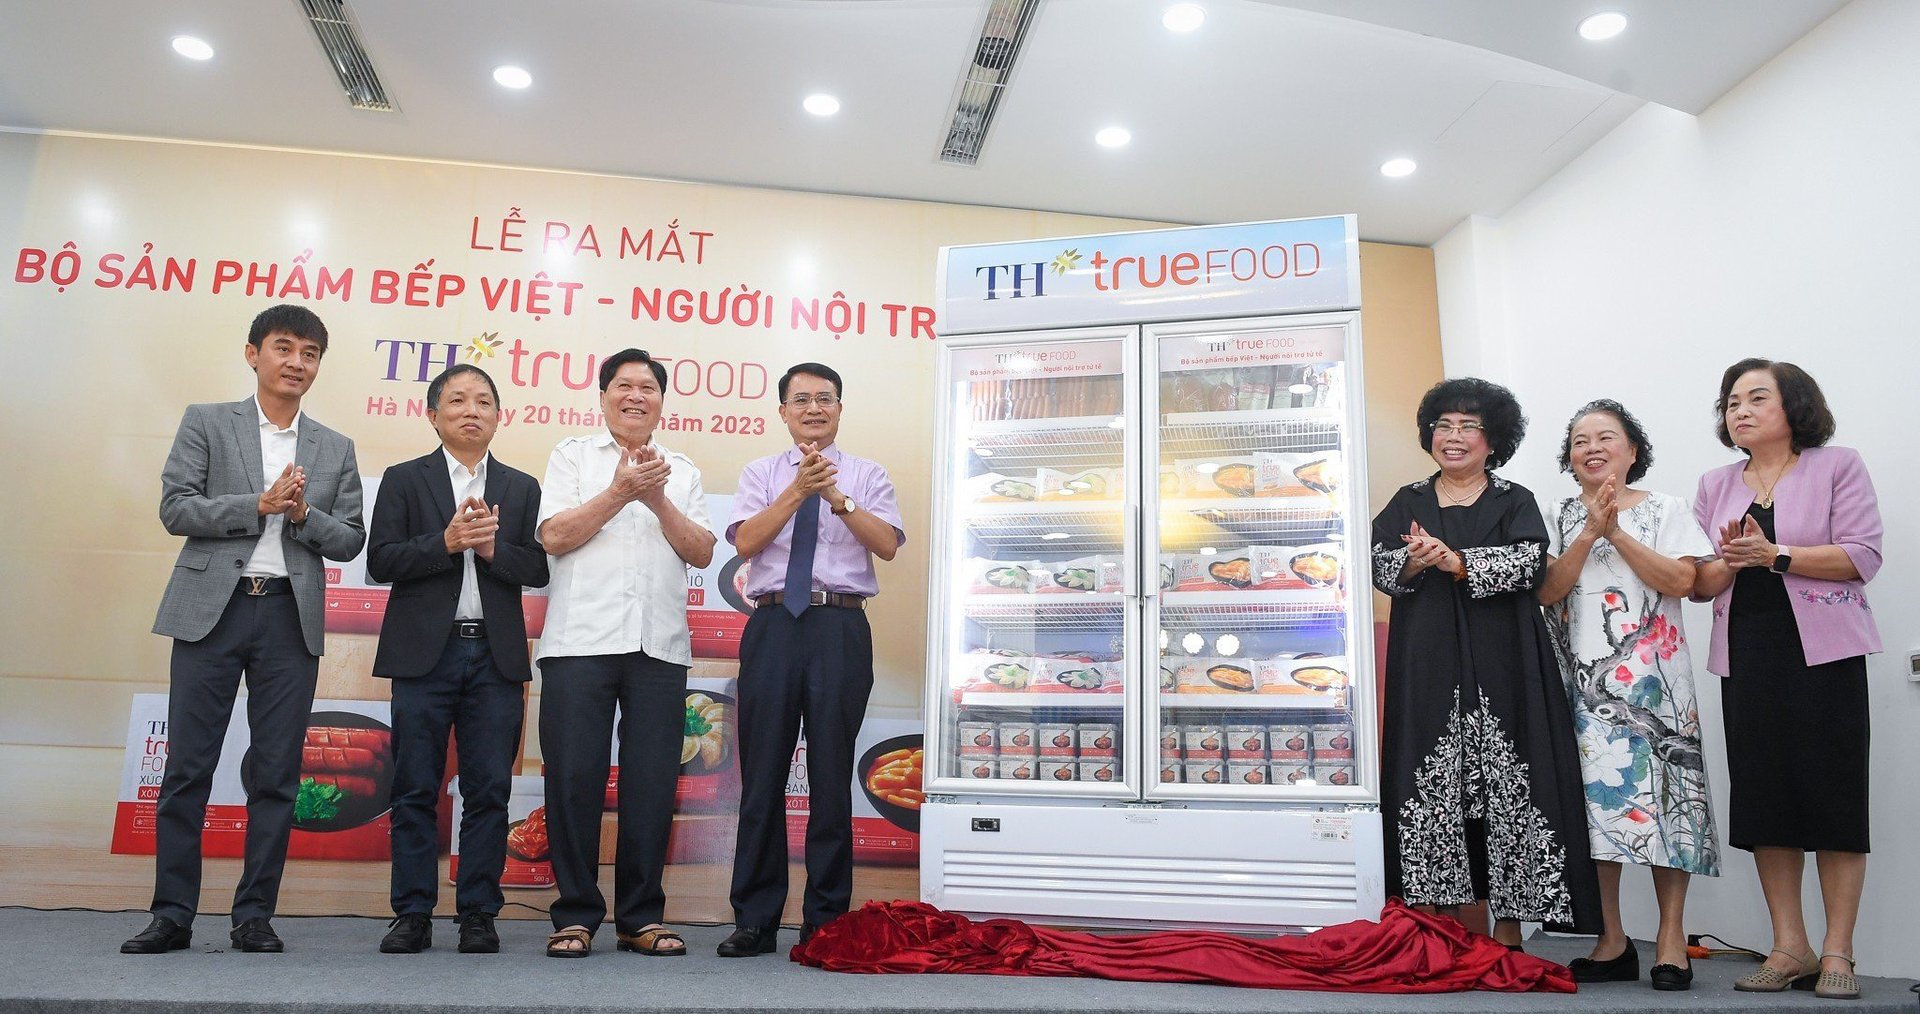 Bà Thái Hương cùng các chuyên gia tại lễ ra mắt TH true FOOD - Bộ sản phẩm bếp Việt - Người nội trợ tử tế.